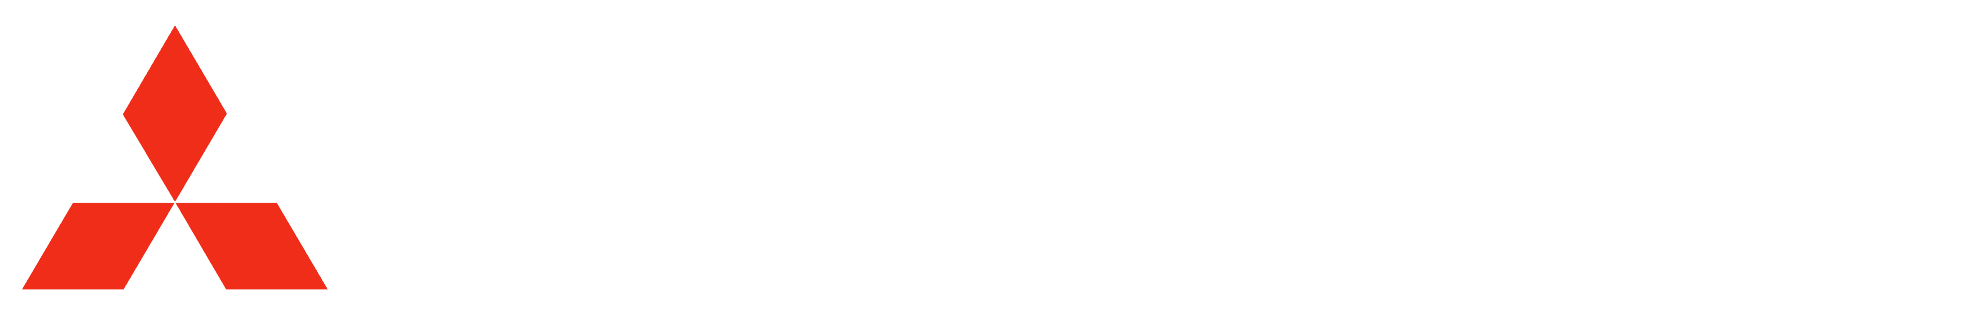 Mitsubishi HC Capital America